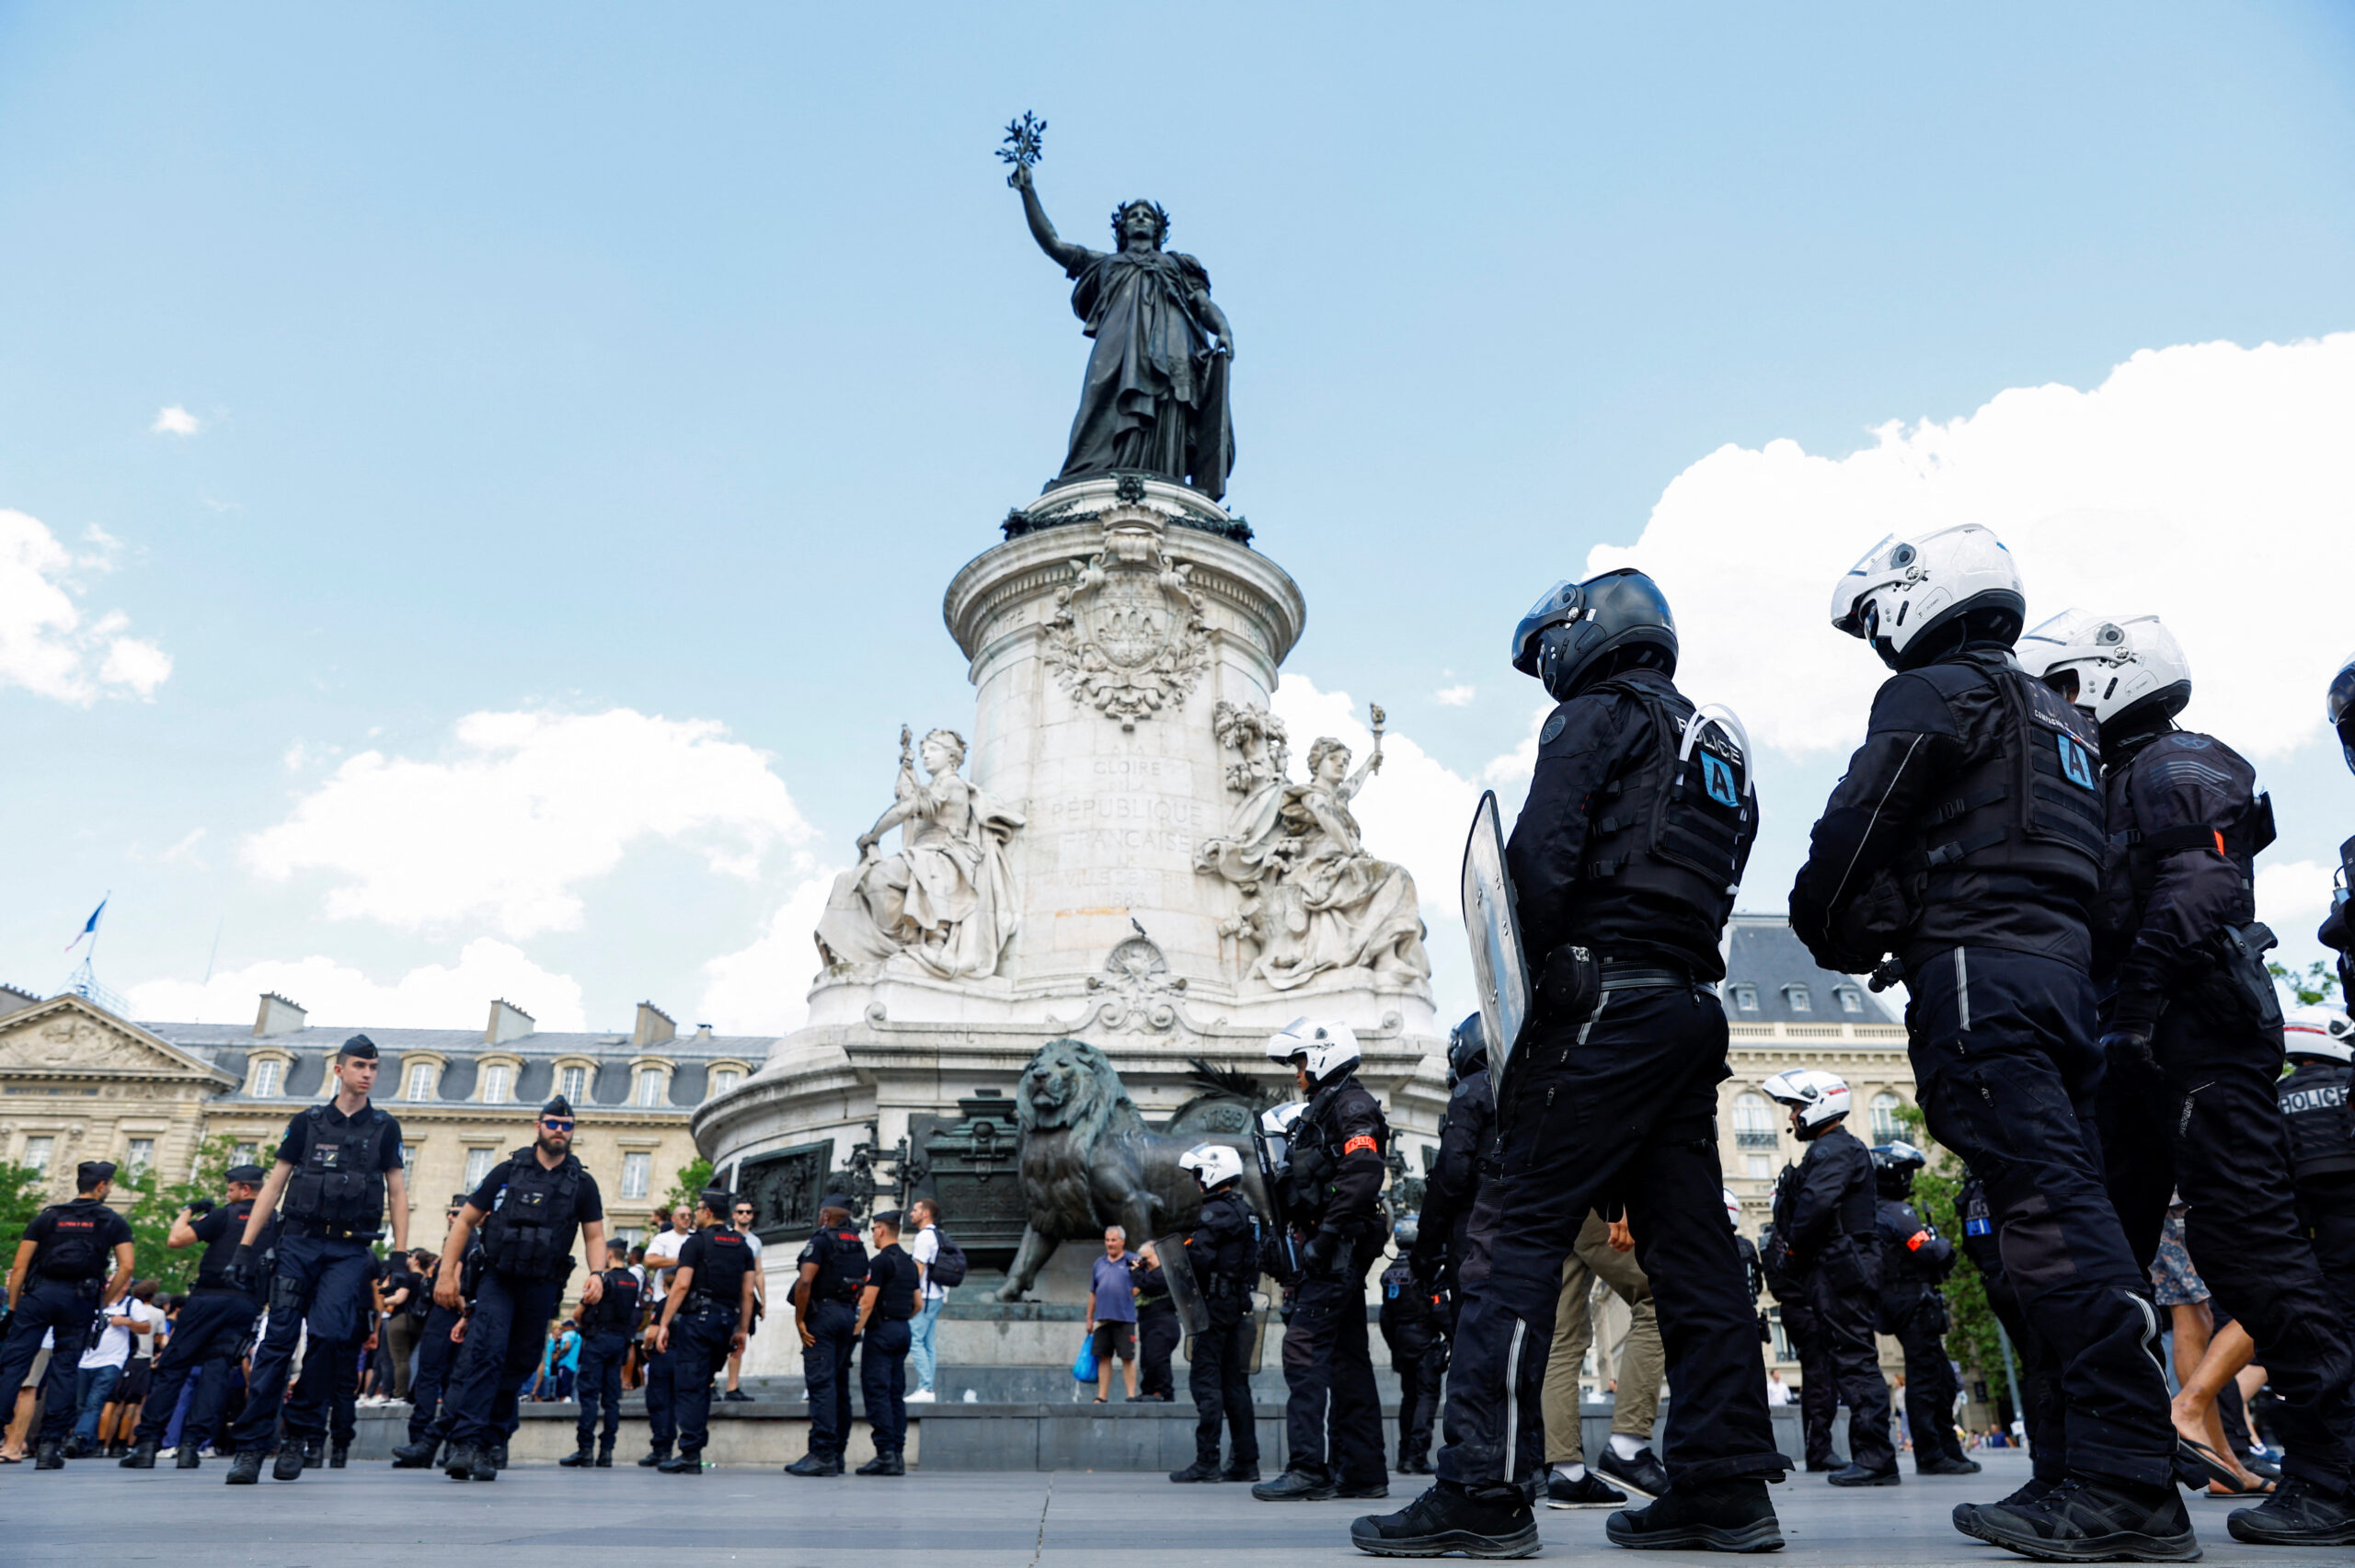 франция протест